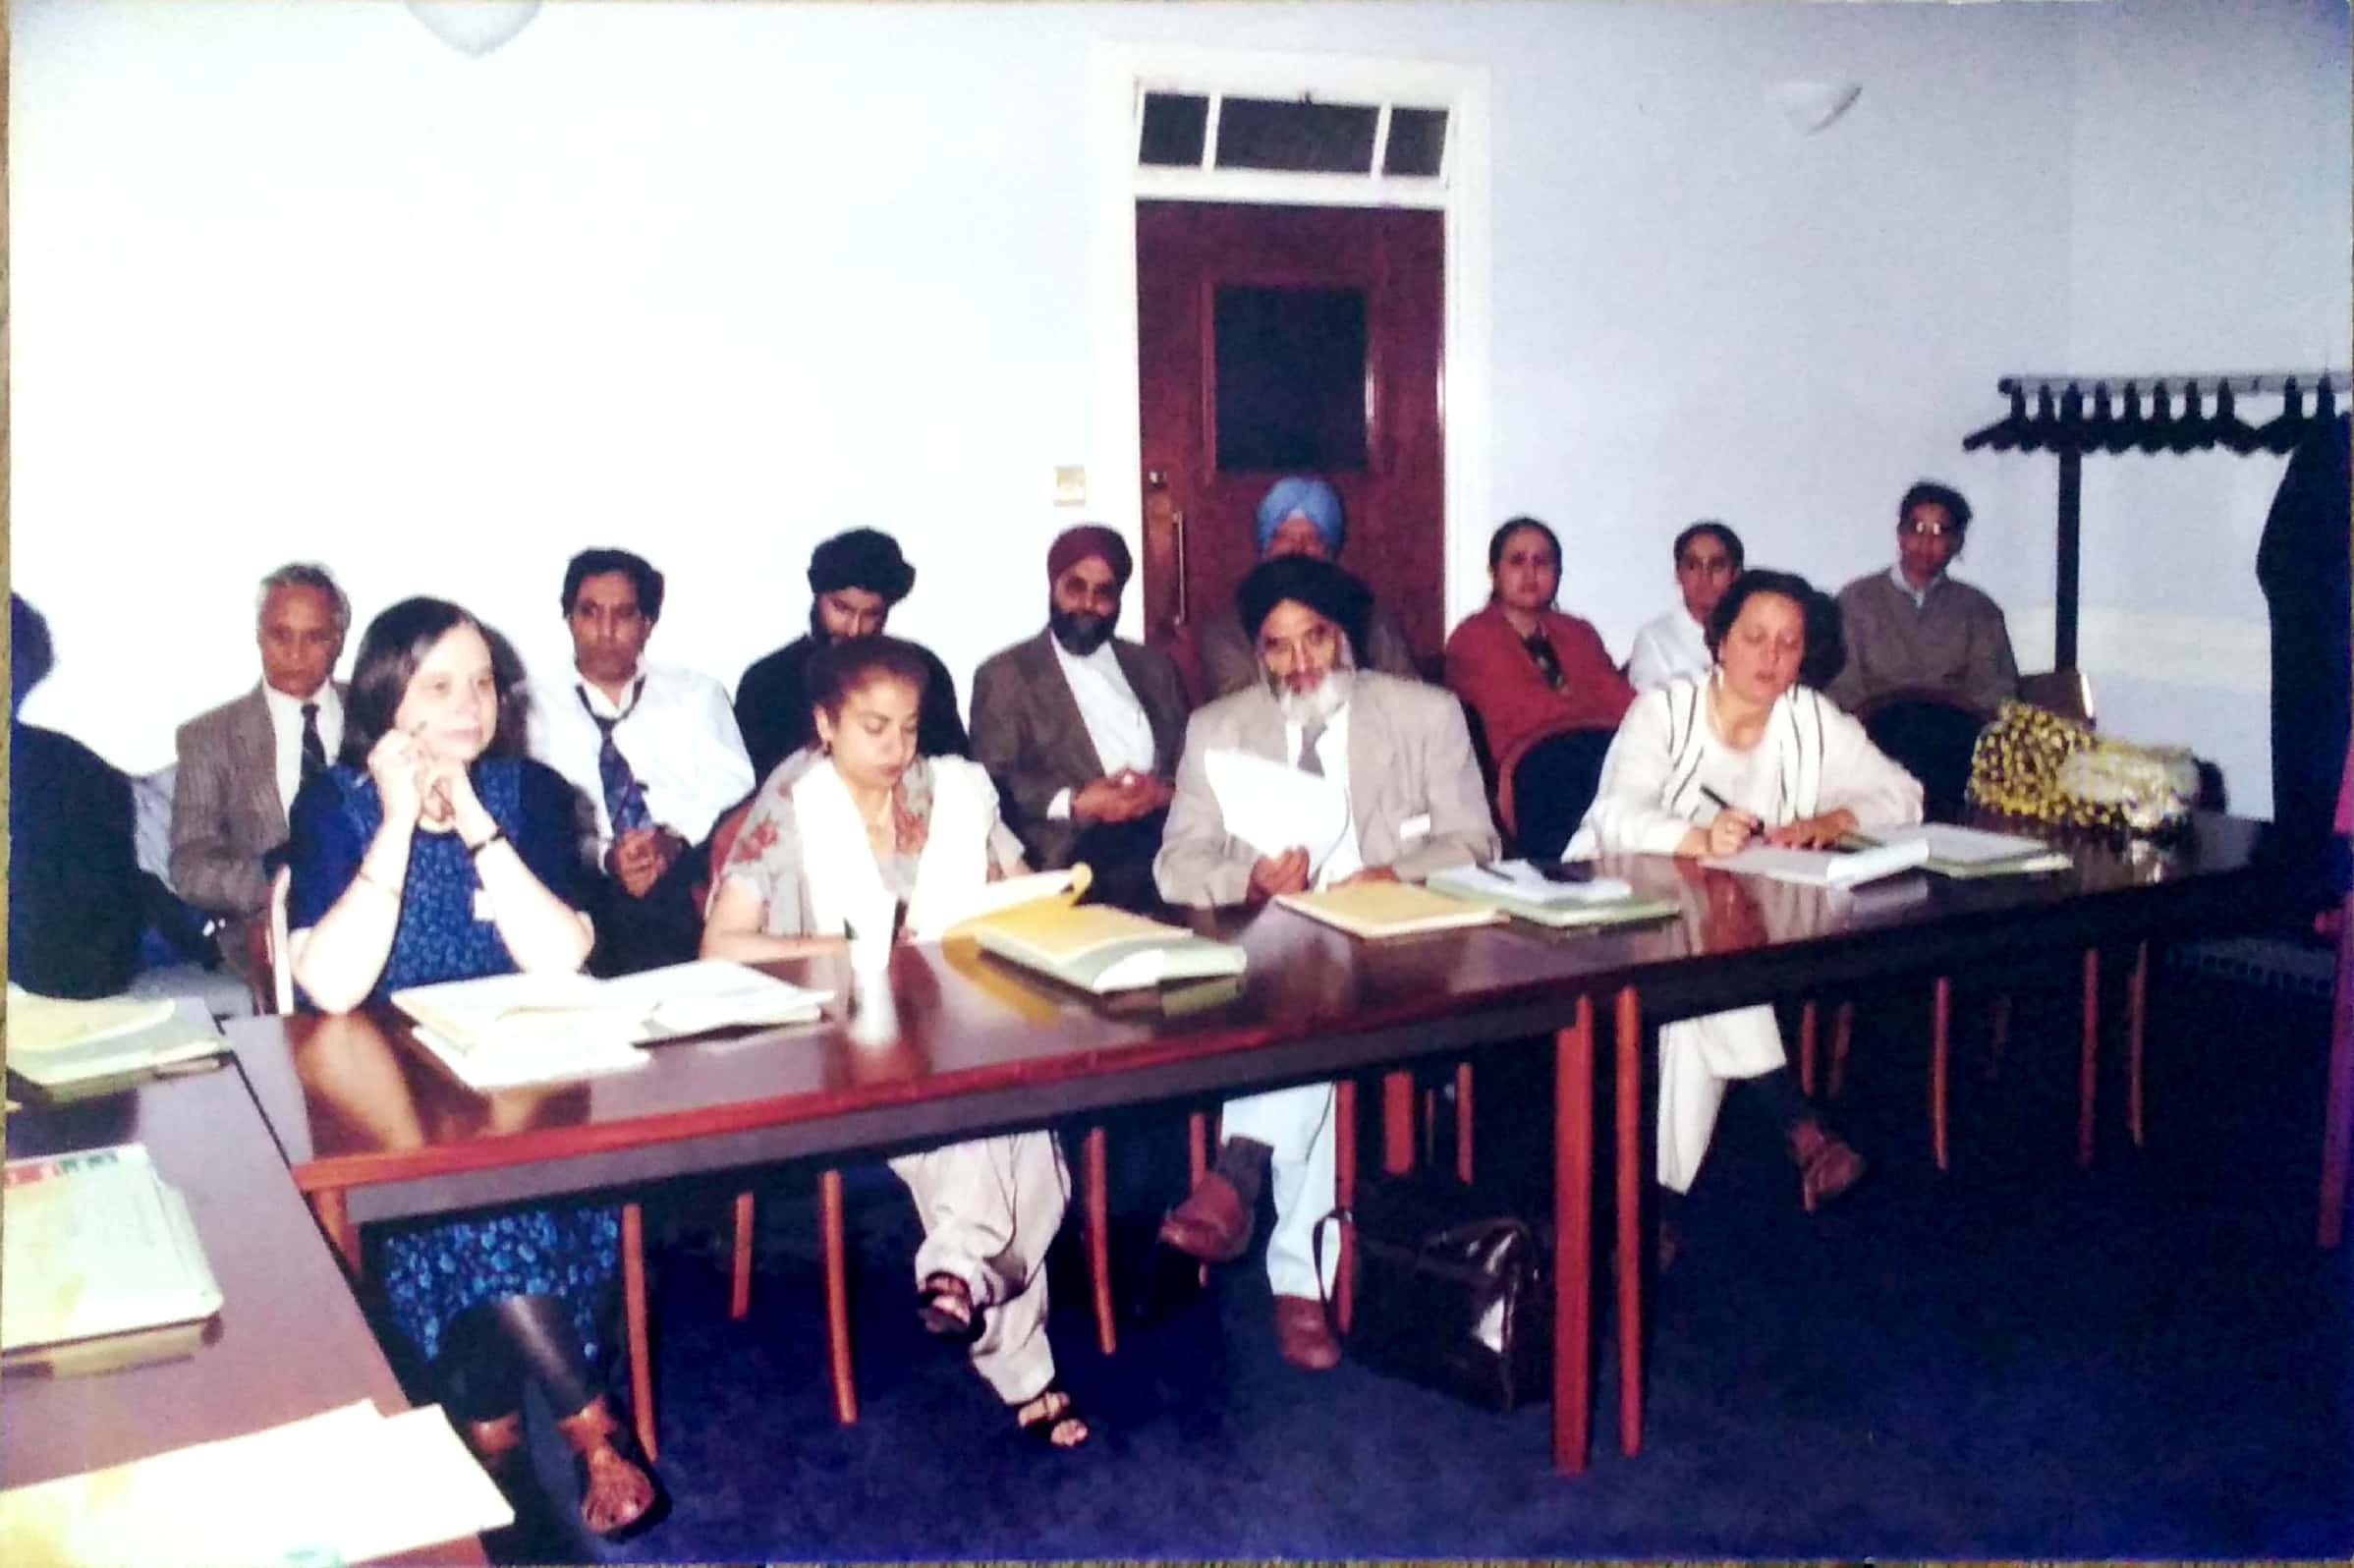 Darshan Singh Tatla attending a seminar